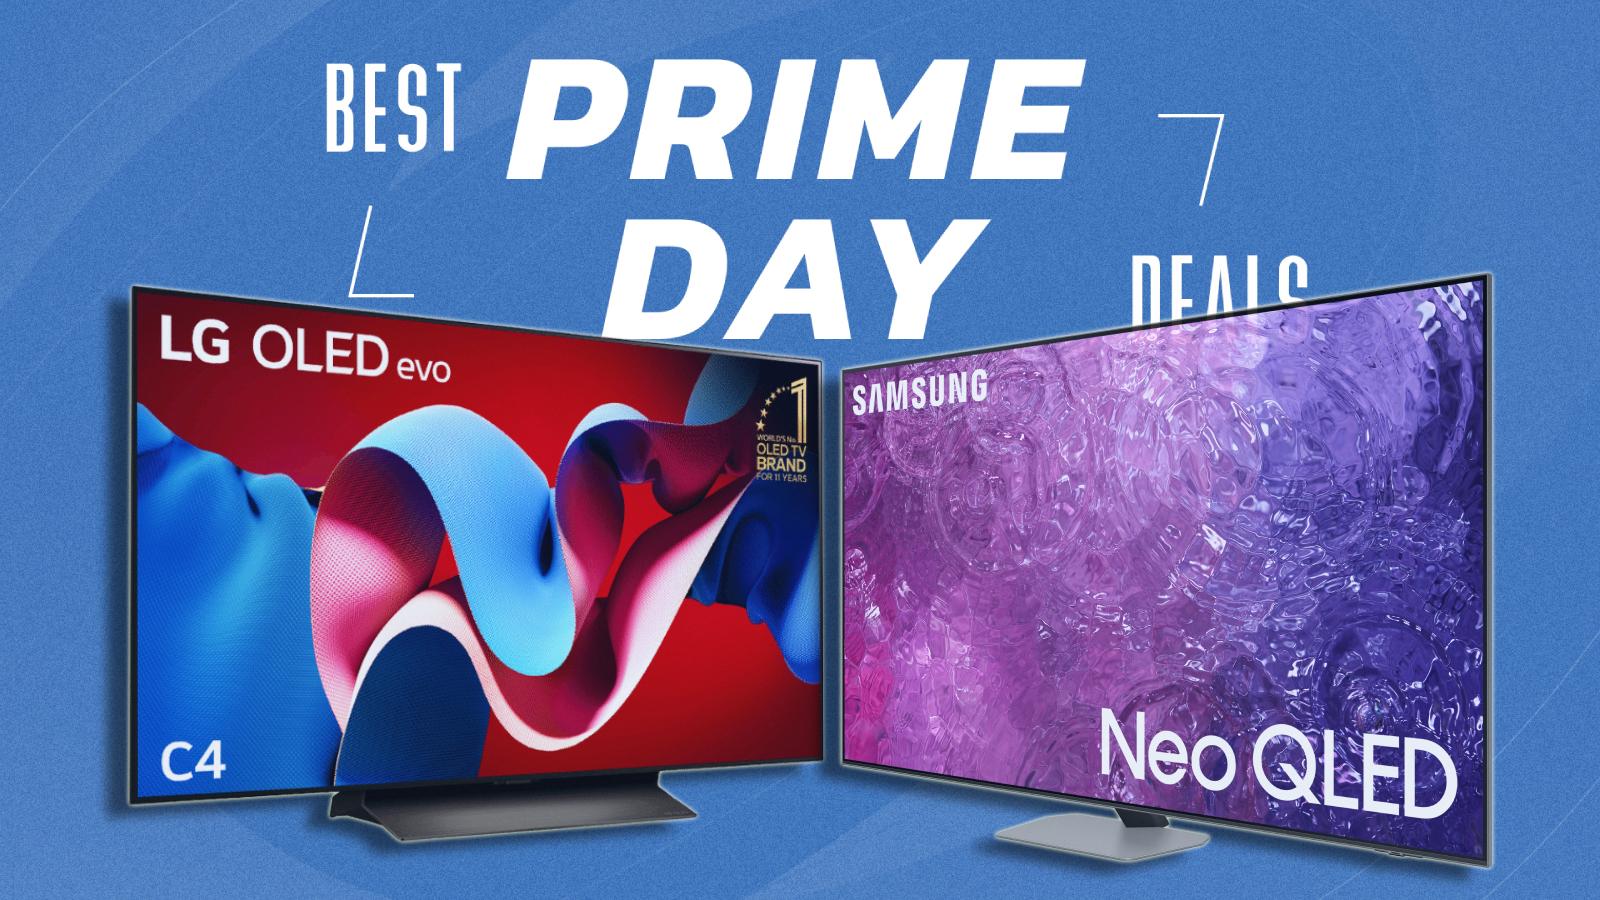 Prrime day TV deals